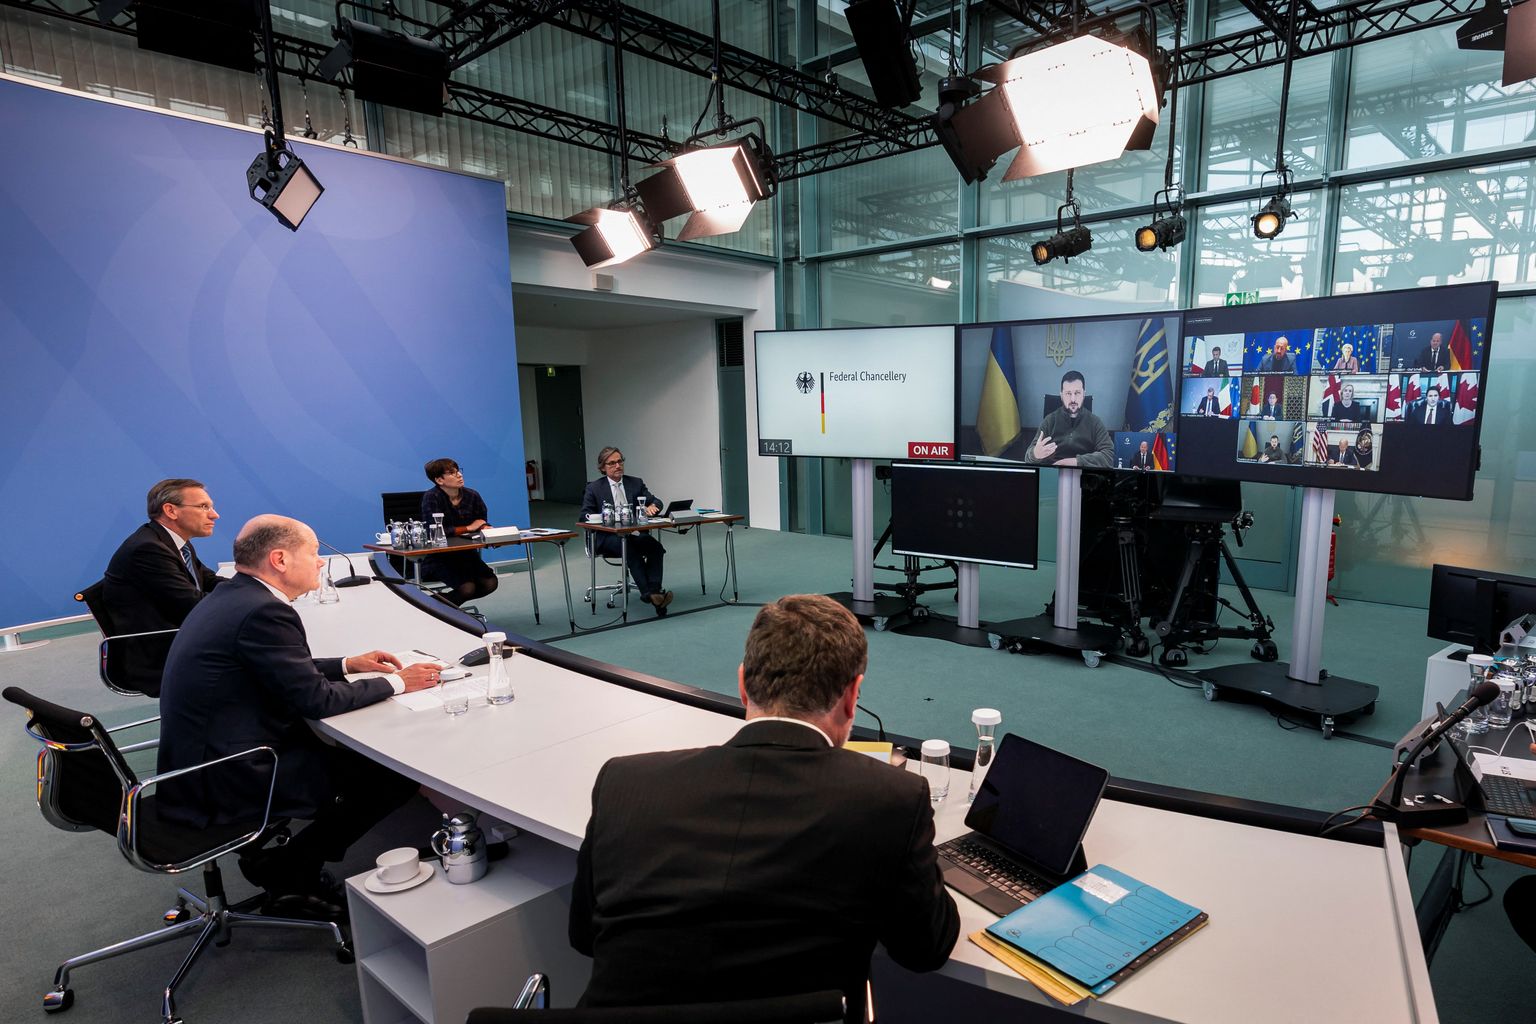 Saksamaa kantsler Olaf Scholz kuulab Berliinis Ukraina presidendi Volodõmõr Zelenskõi videopöördumist G7 riikide liidritele.